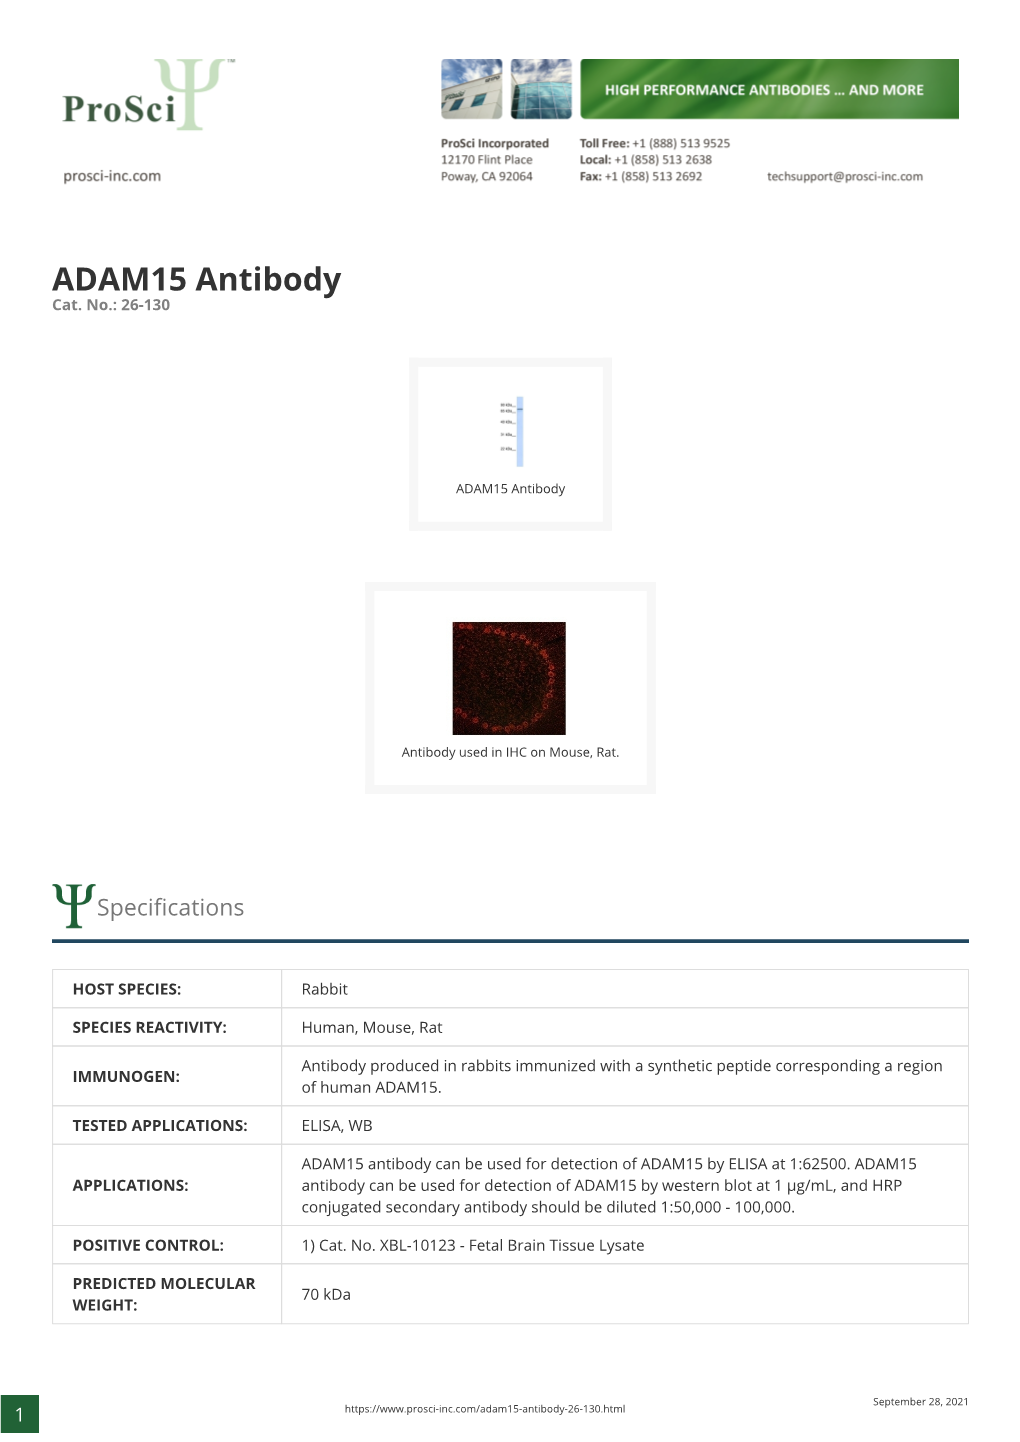 ADAM15 Antibody Cat